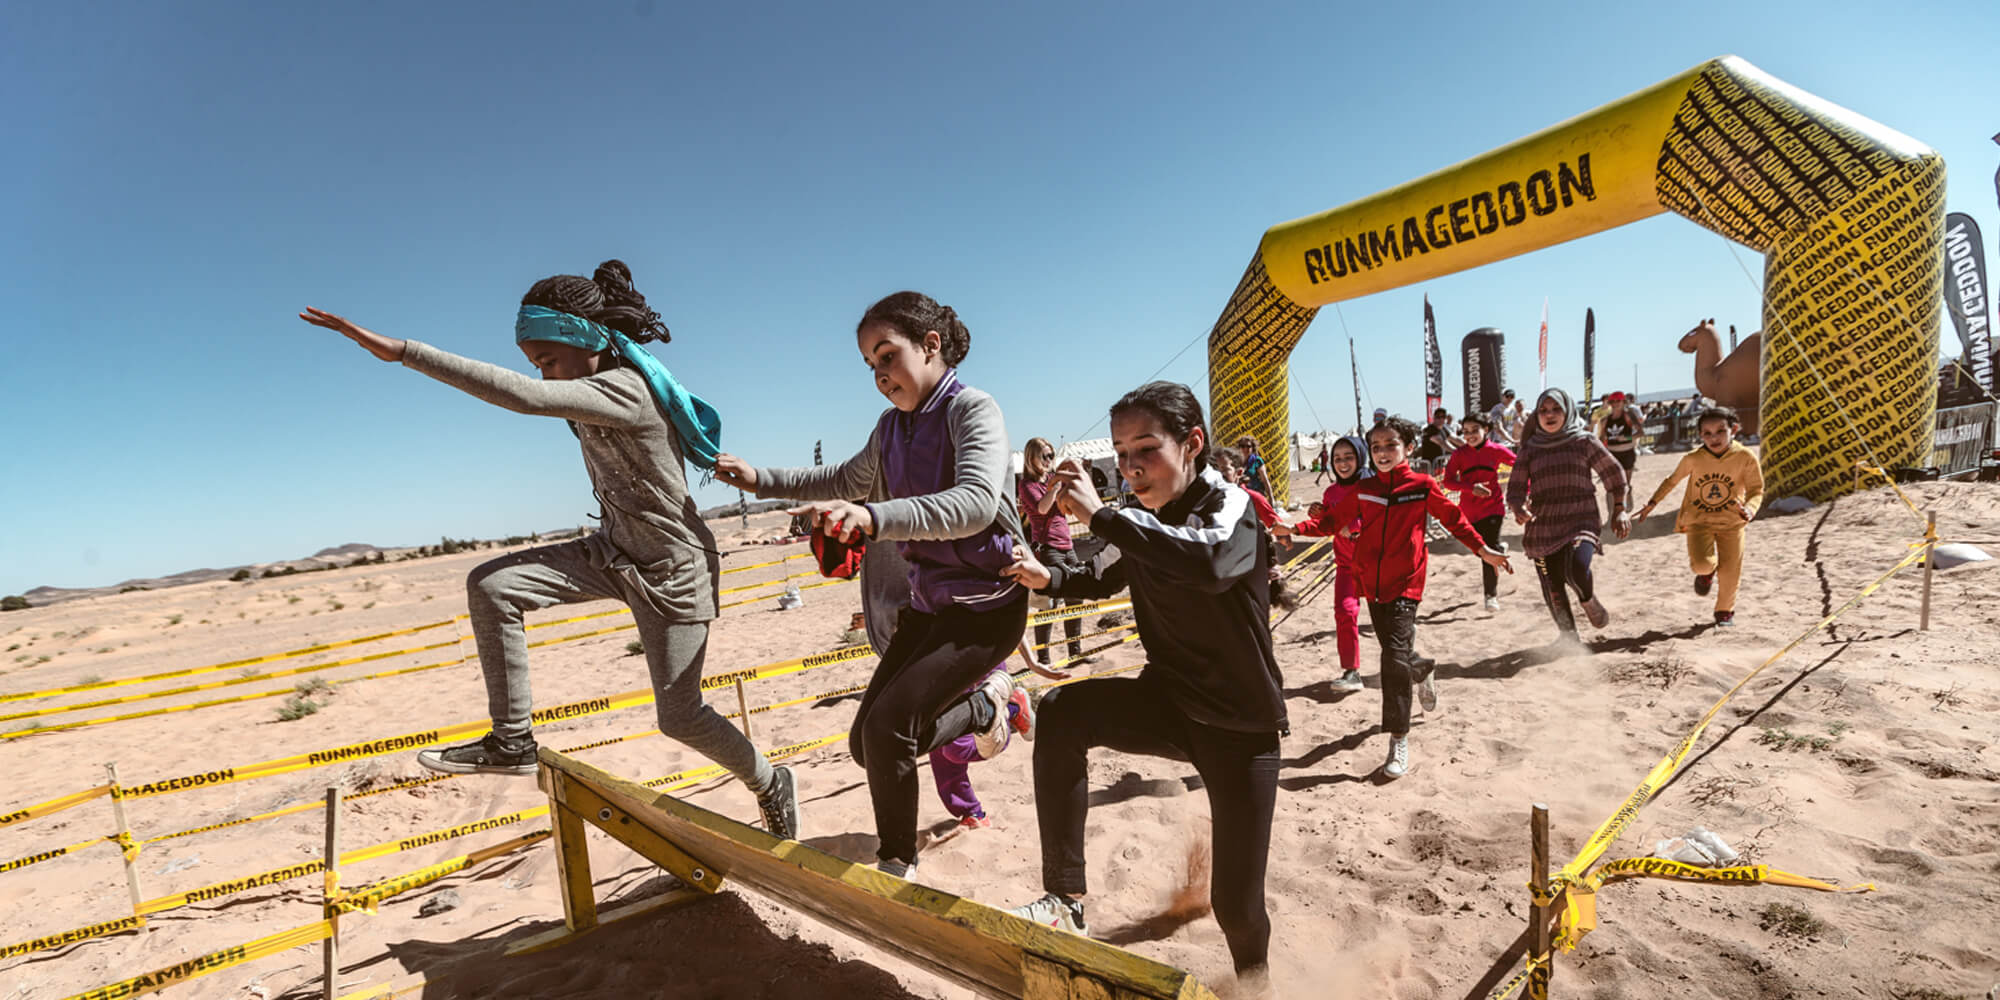 Brama startowa stosowana na pustyni podczas ektremalnych biegów Runmageddon